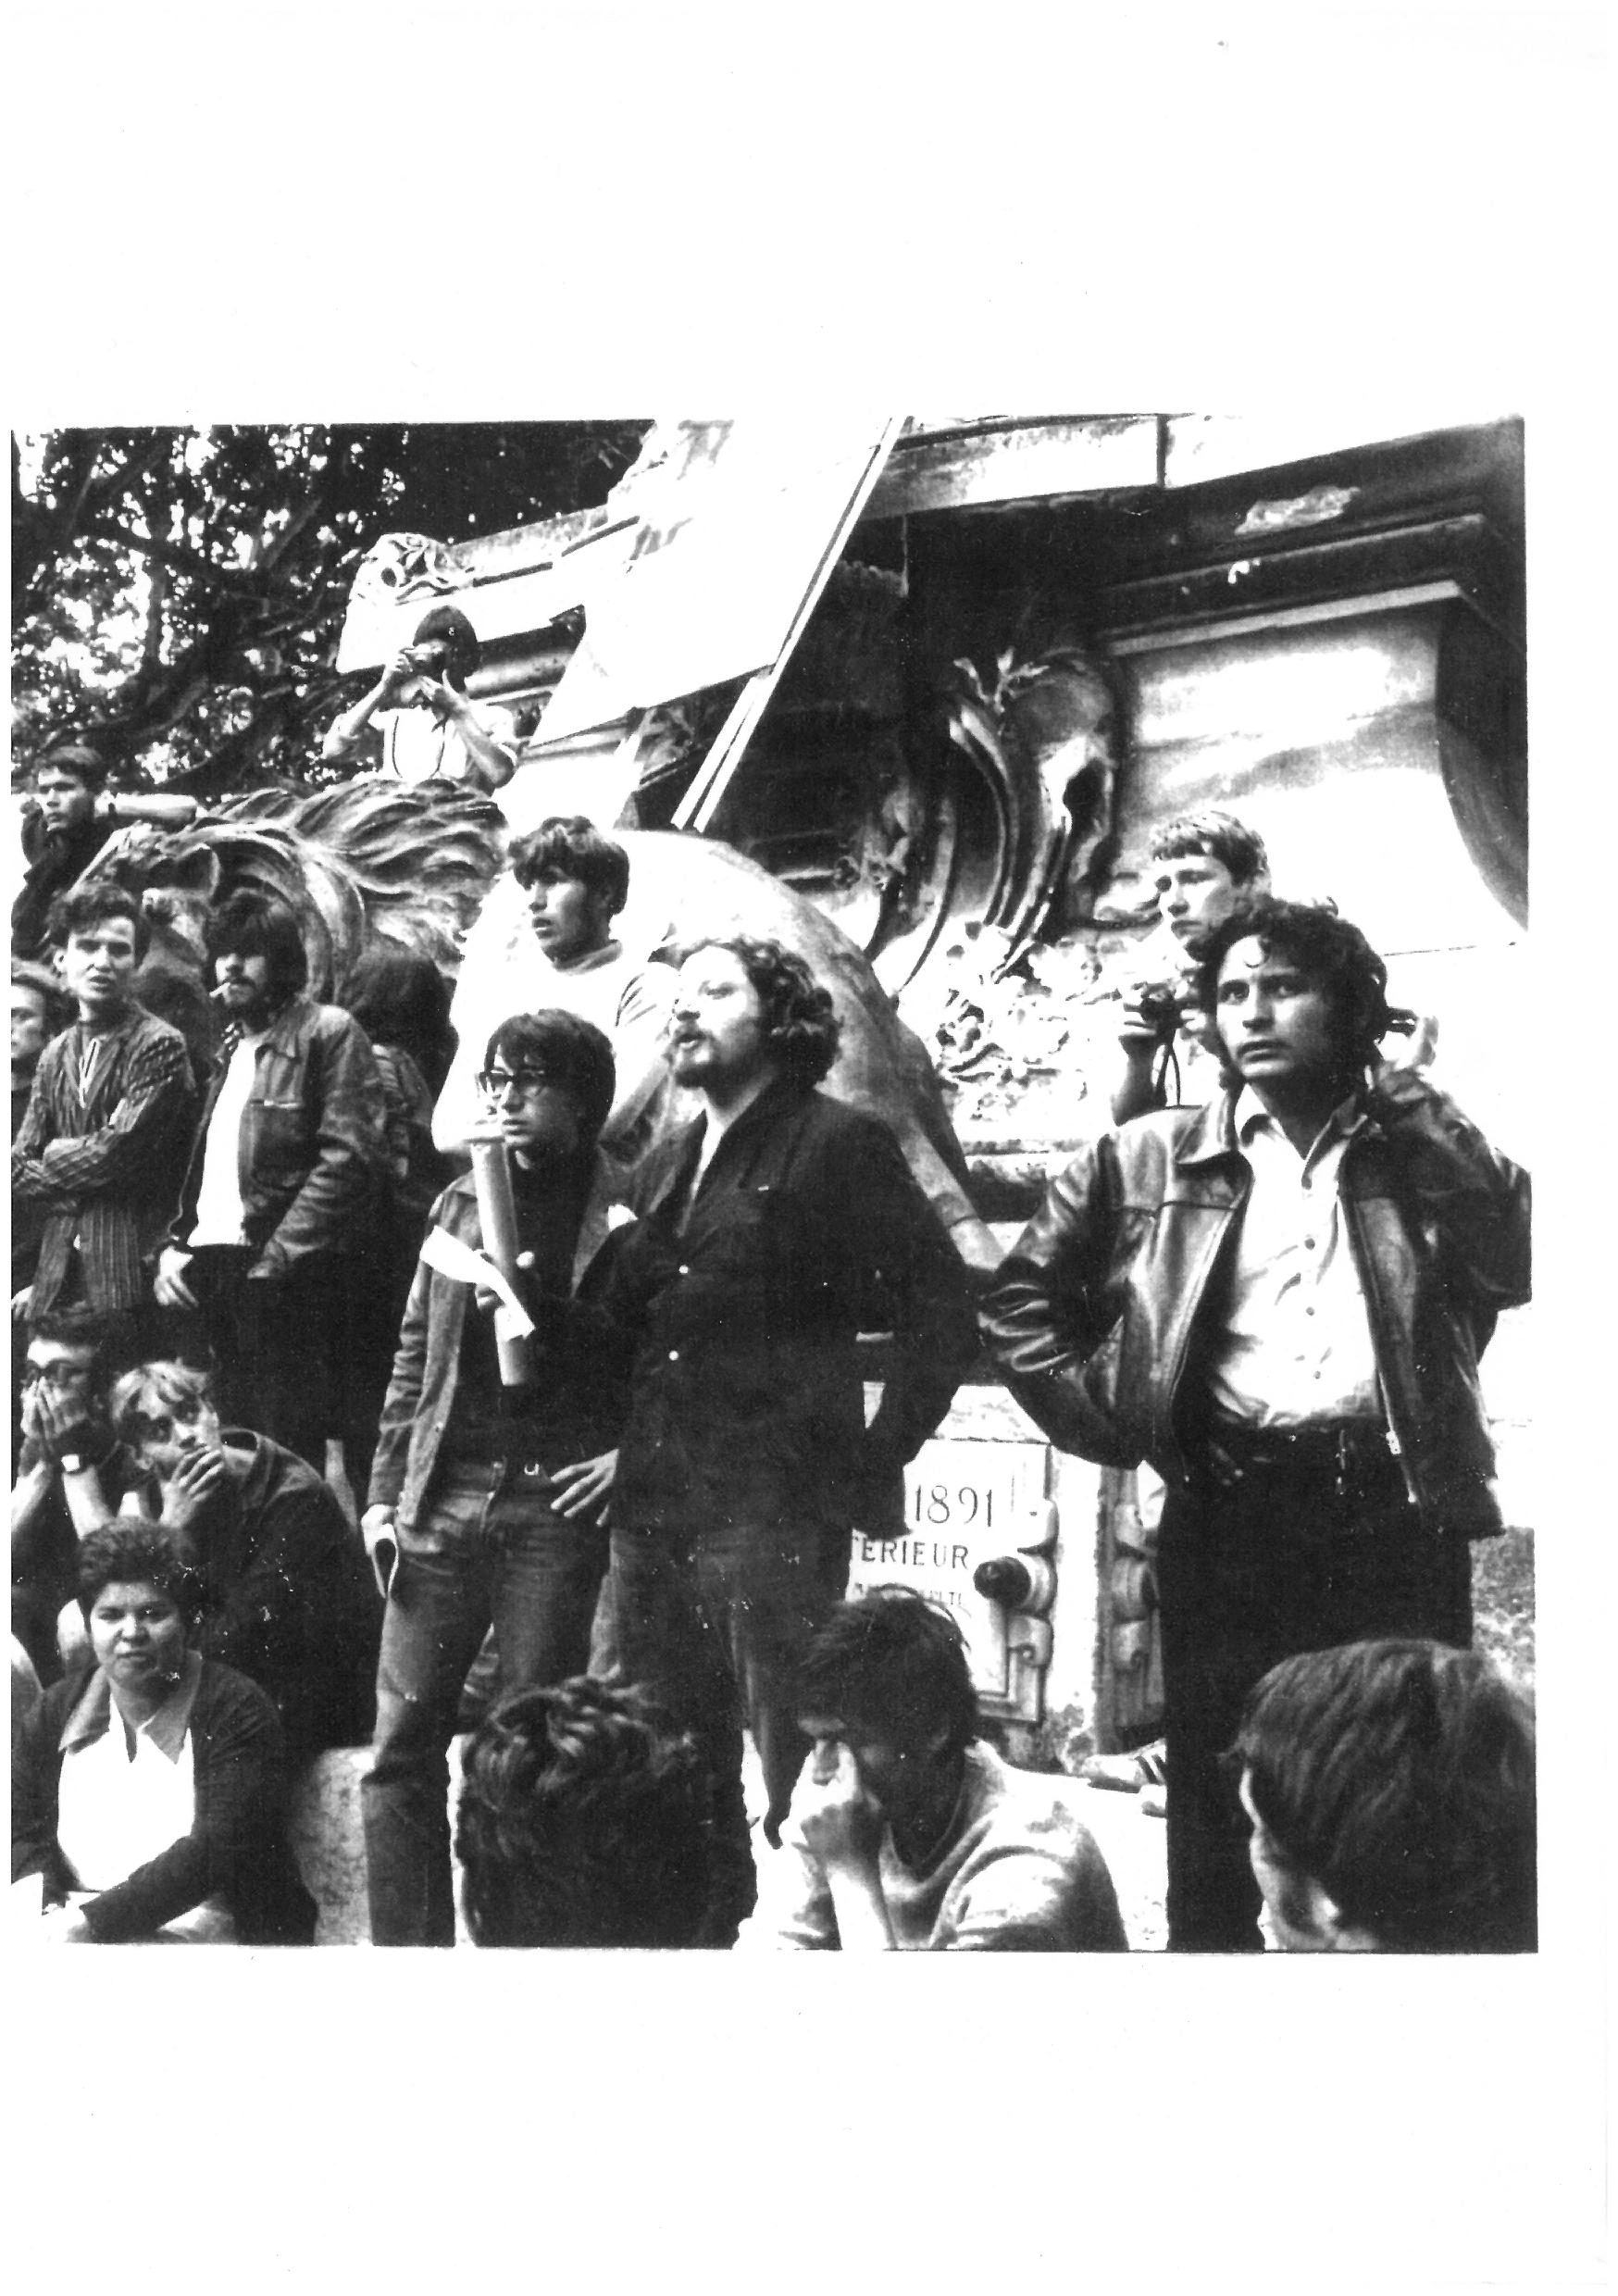 Gérard Gelas, jean jacques lebel, andré Benedetto 1968 sur la place de l'horloge - Copie